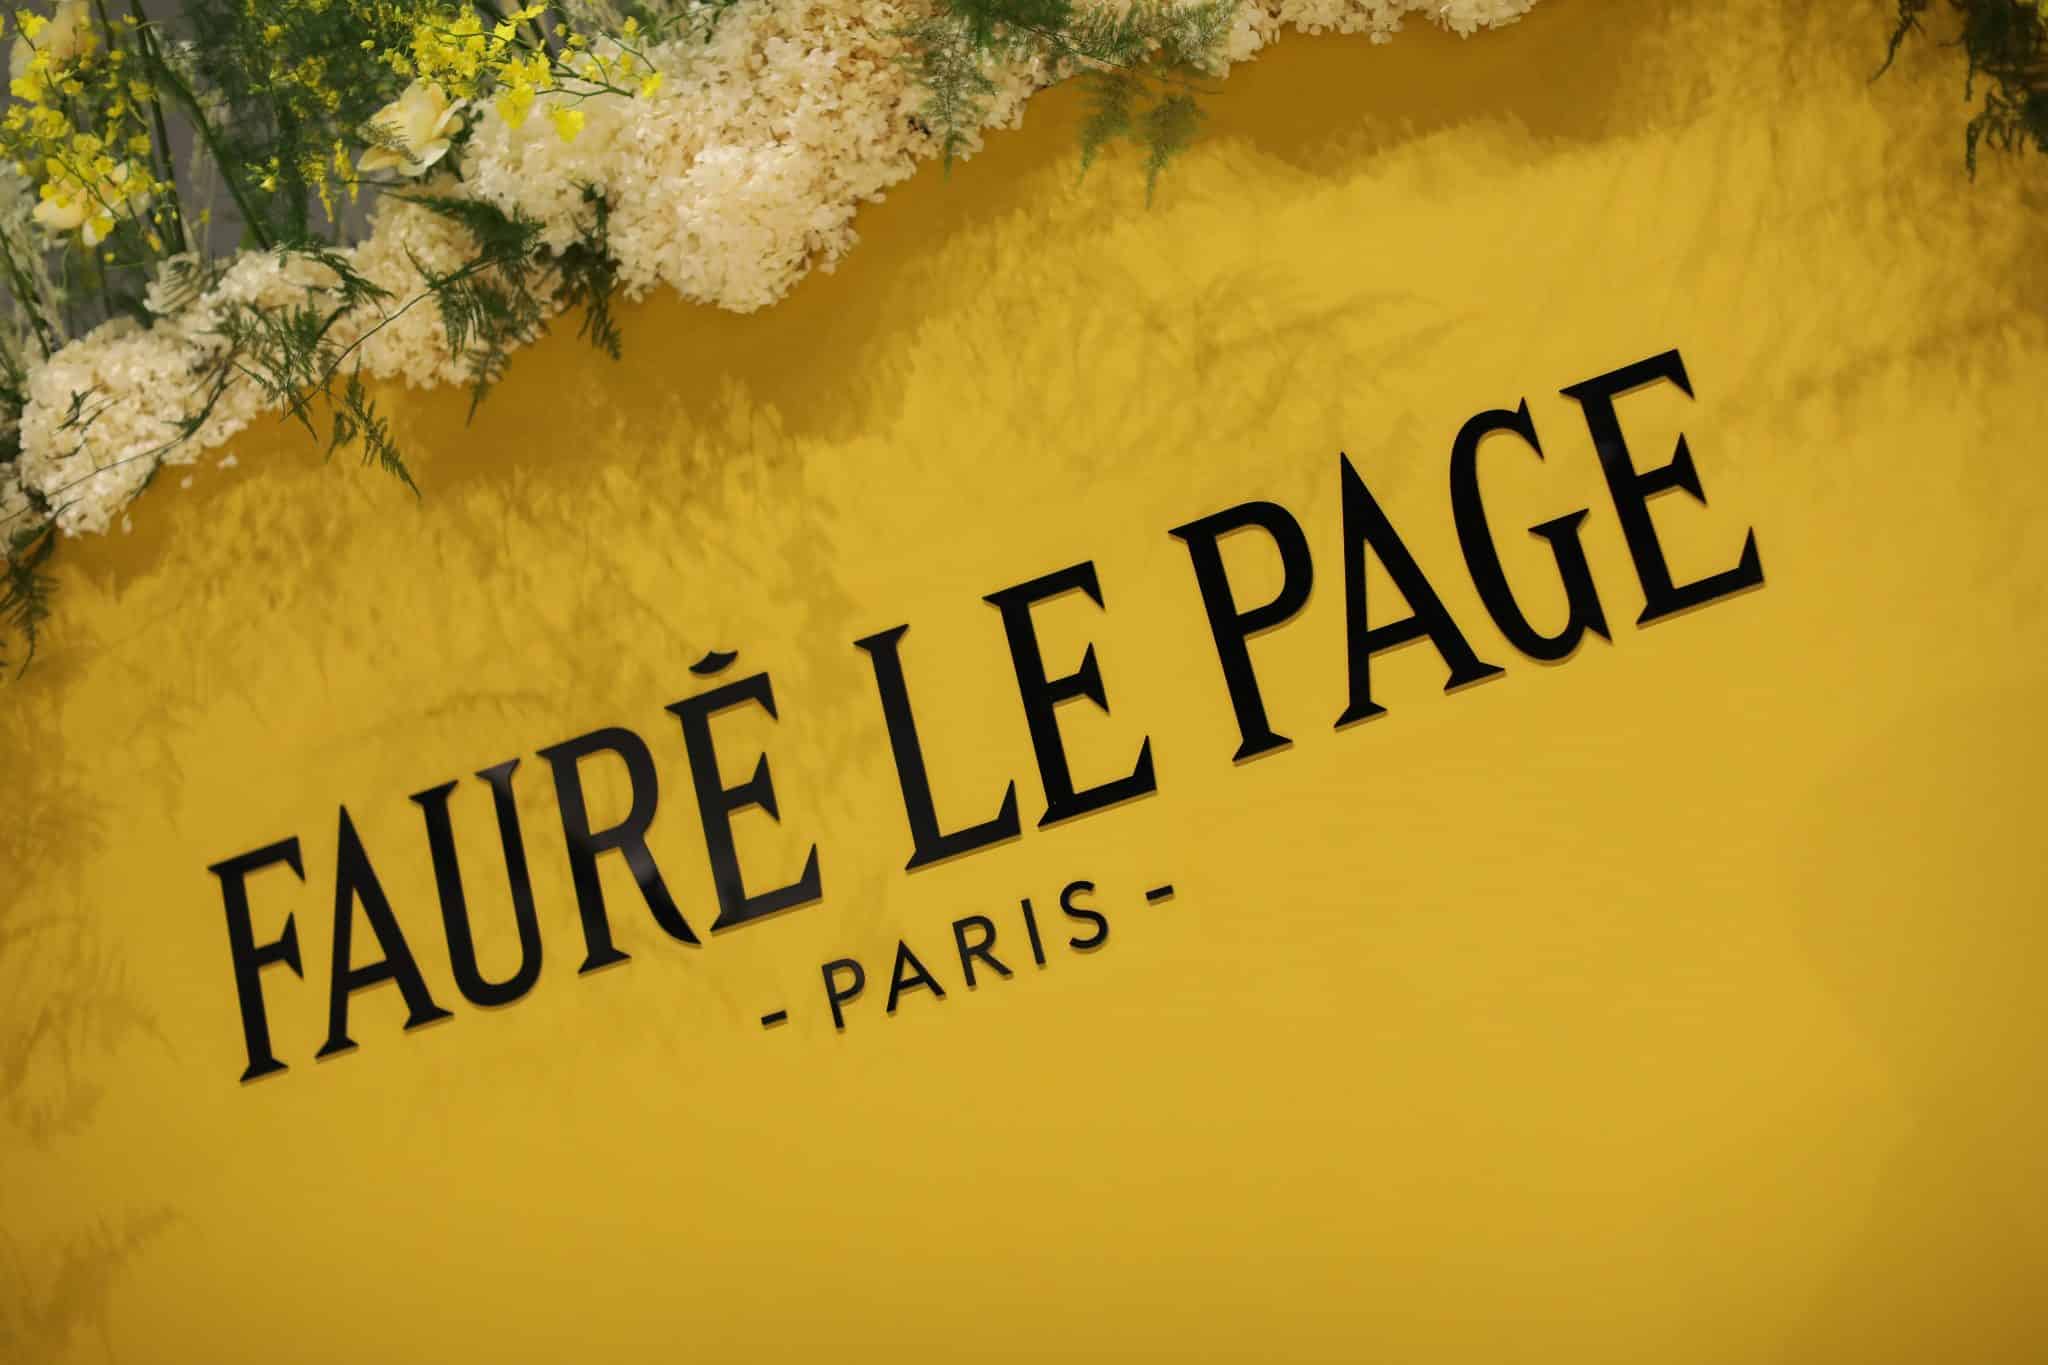 The Fauré Le Page Press Event - K Consultancy